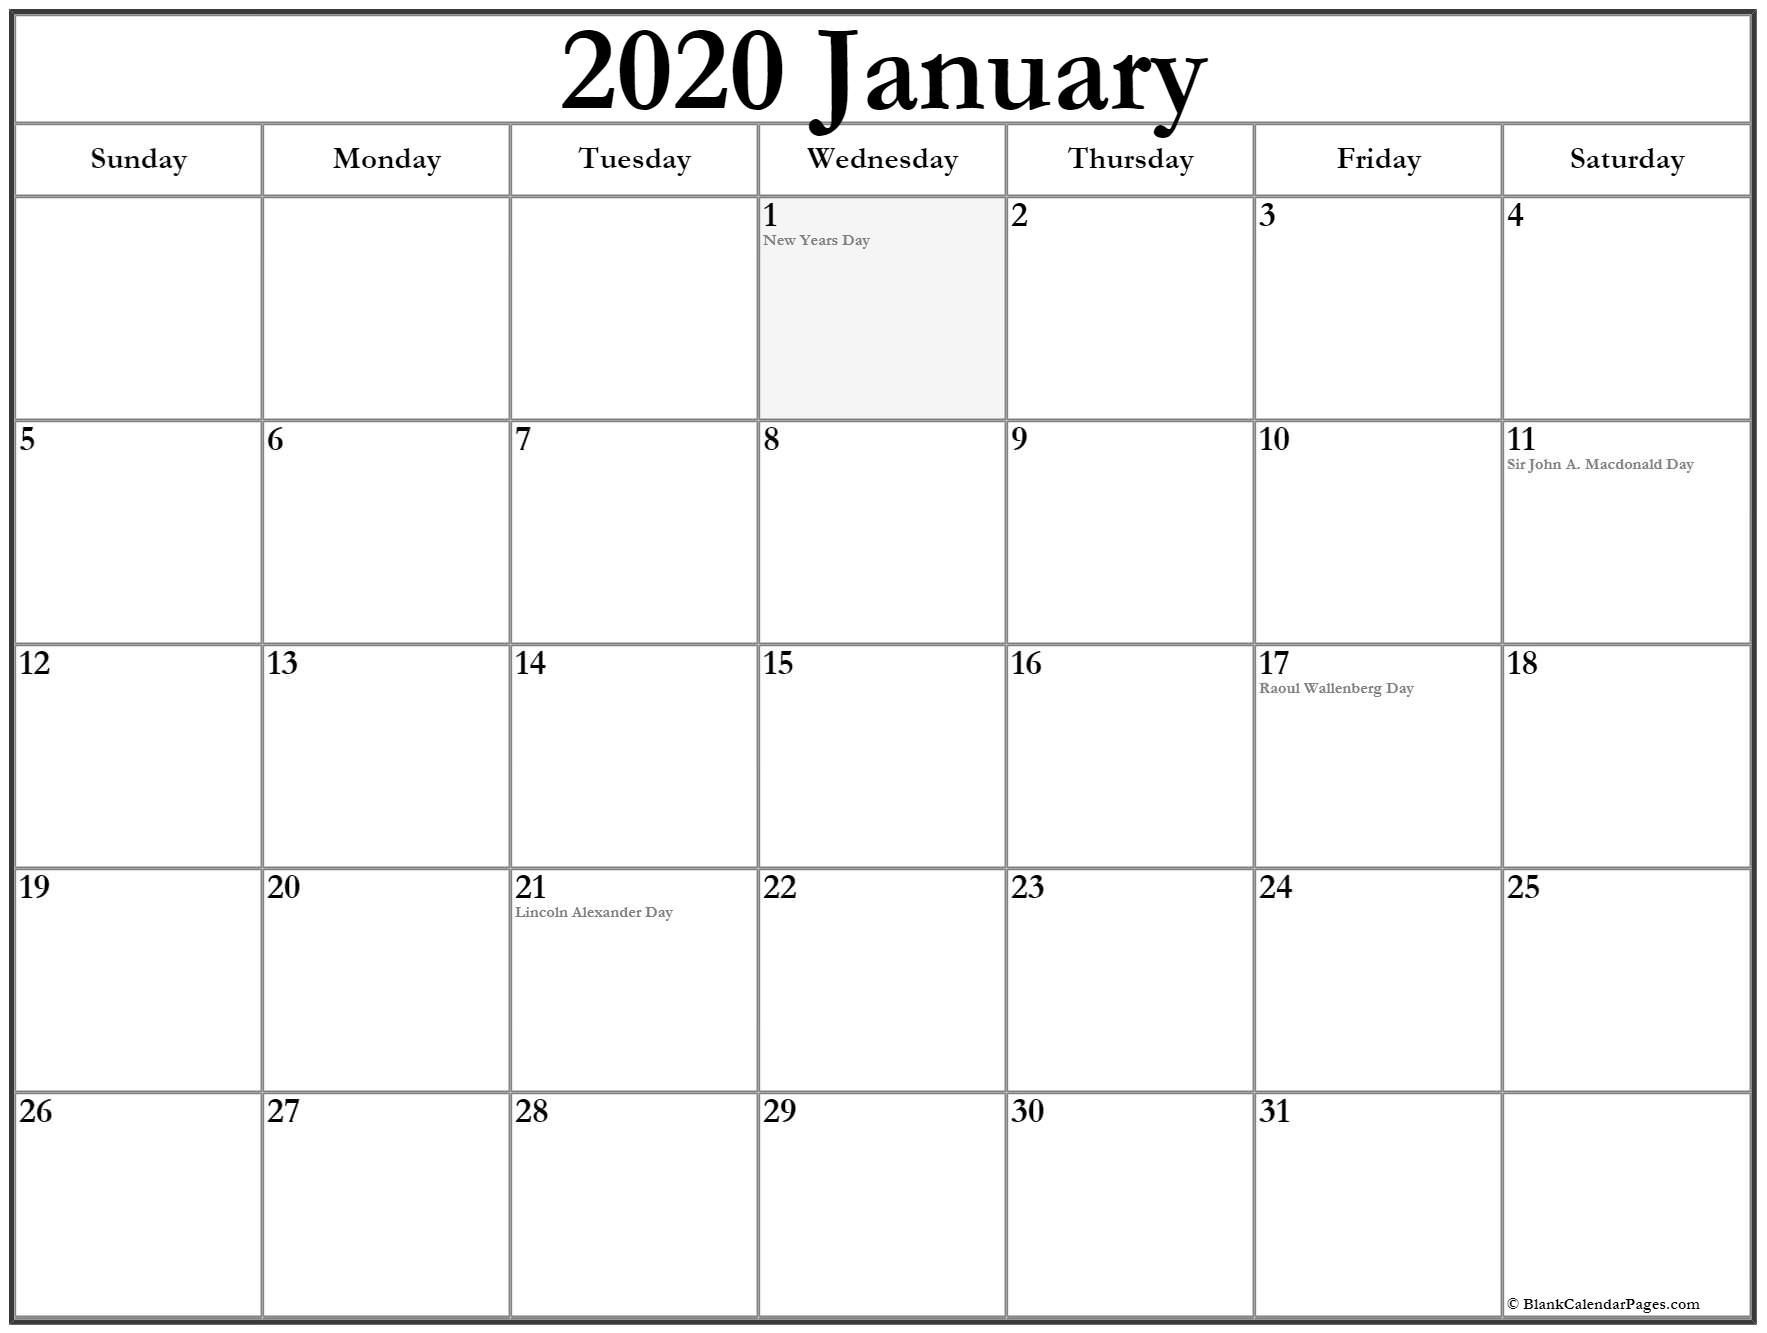 January 2020 Calendar With Holidays | Canadian Calendar Canada January 2020 Printable Calendar